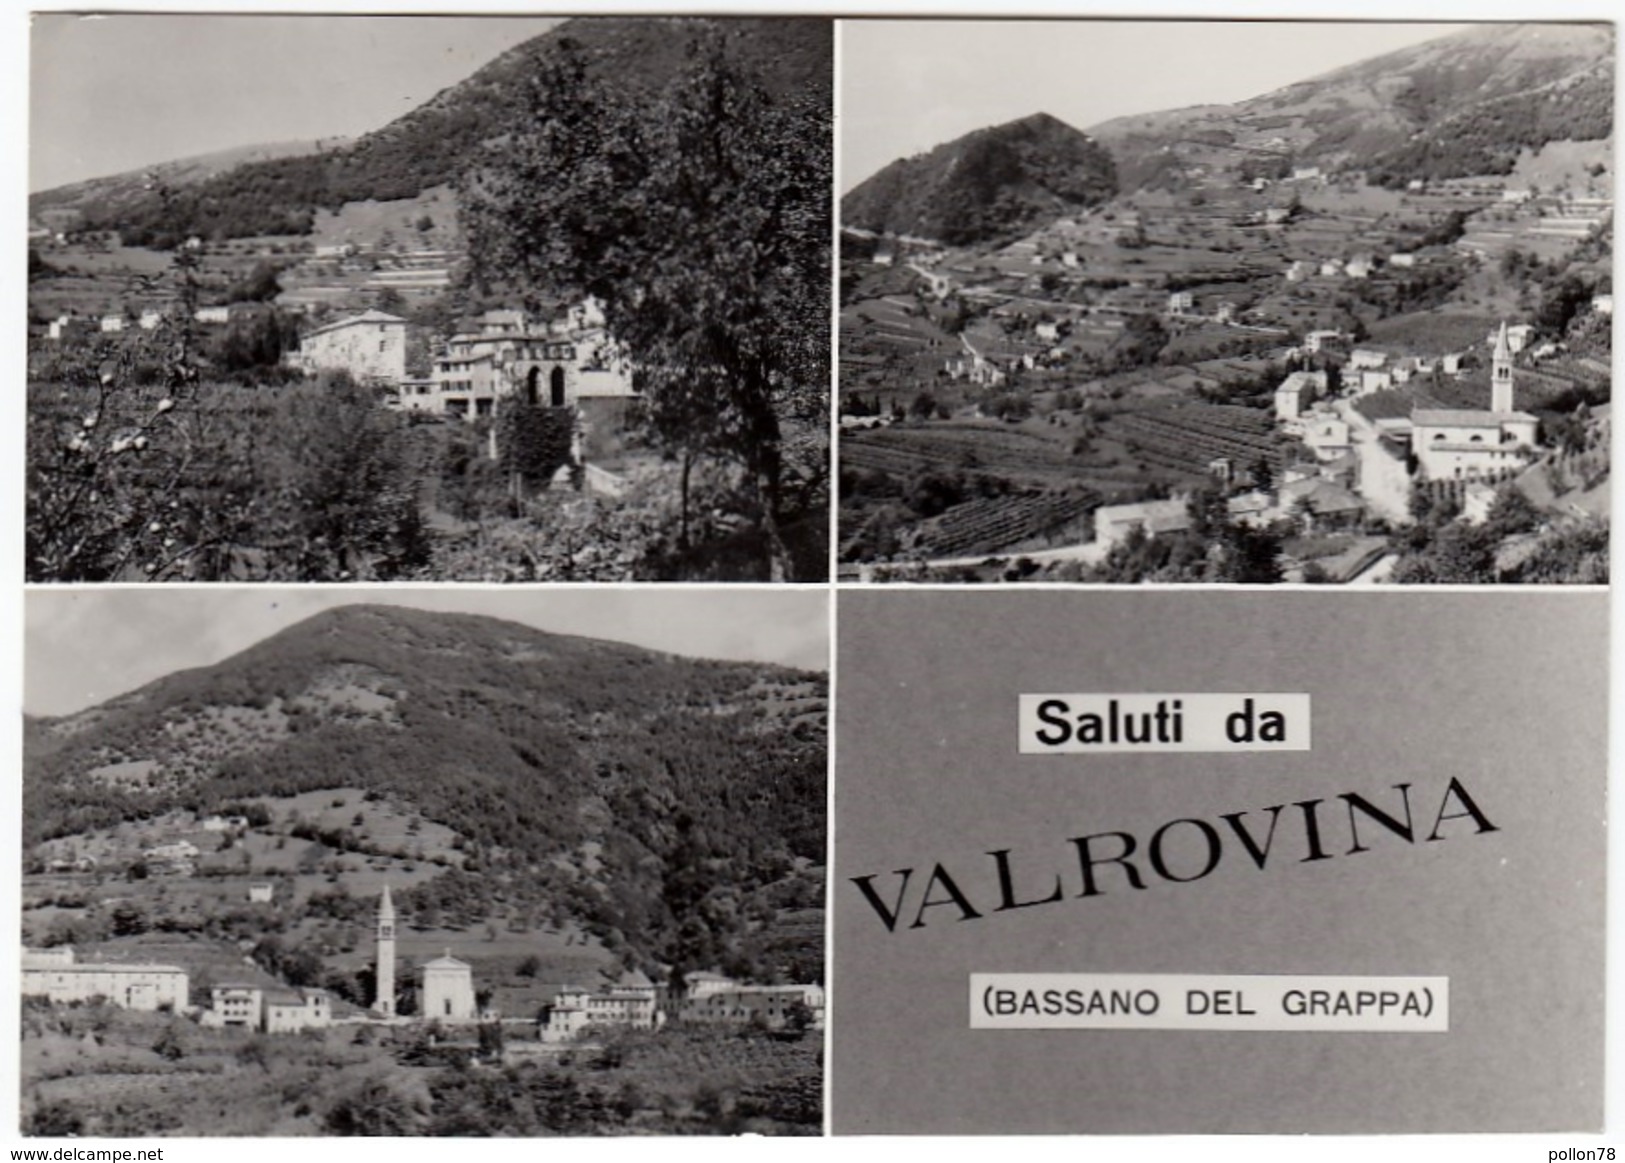 SALUTI DA VALROVINA - BASSANO DEL GRAPPA - VICENZA - 1968 - Vicenza